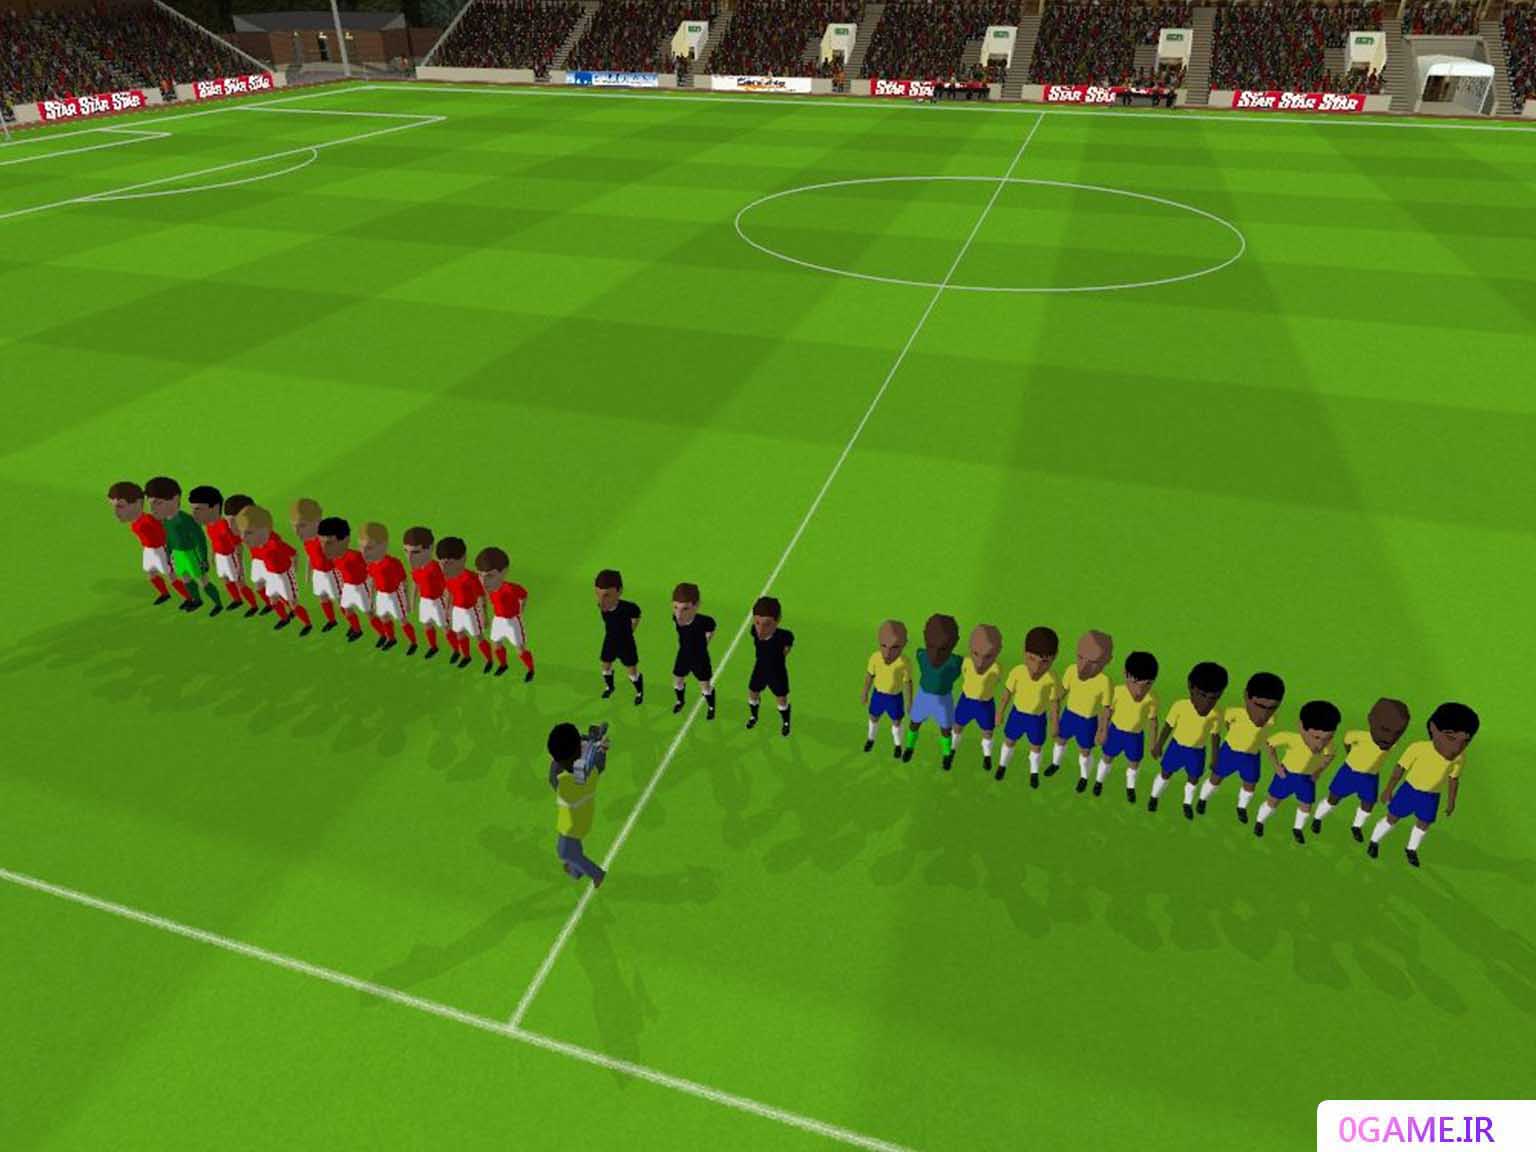 دانلود بازی فوتبال معقول (Sensible Soccer 2006) نسخه کامل برای کامپیوتر